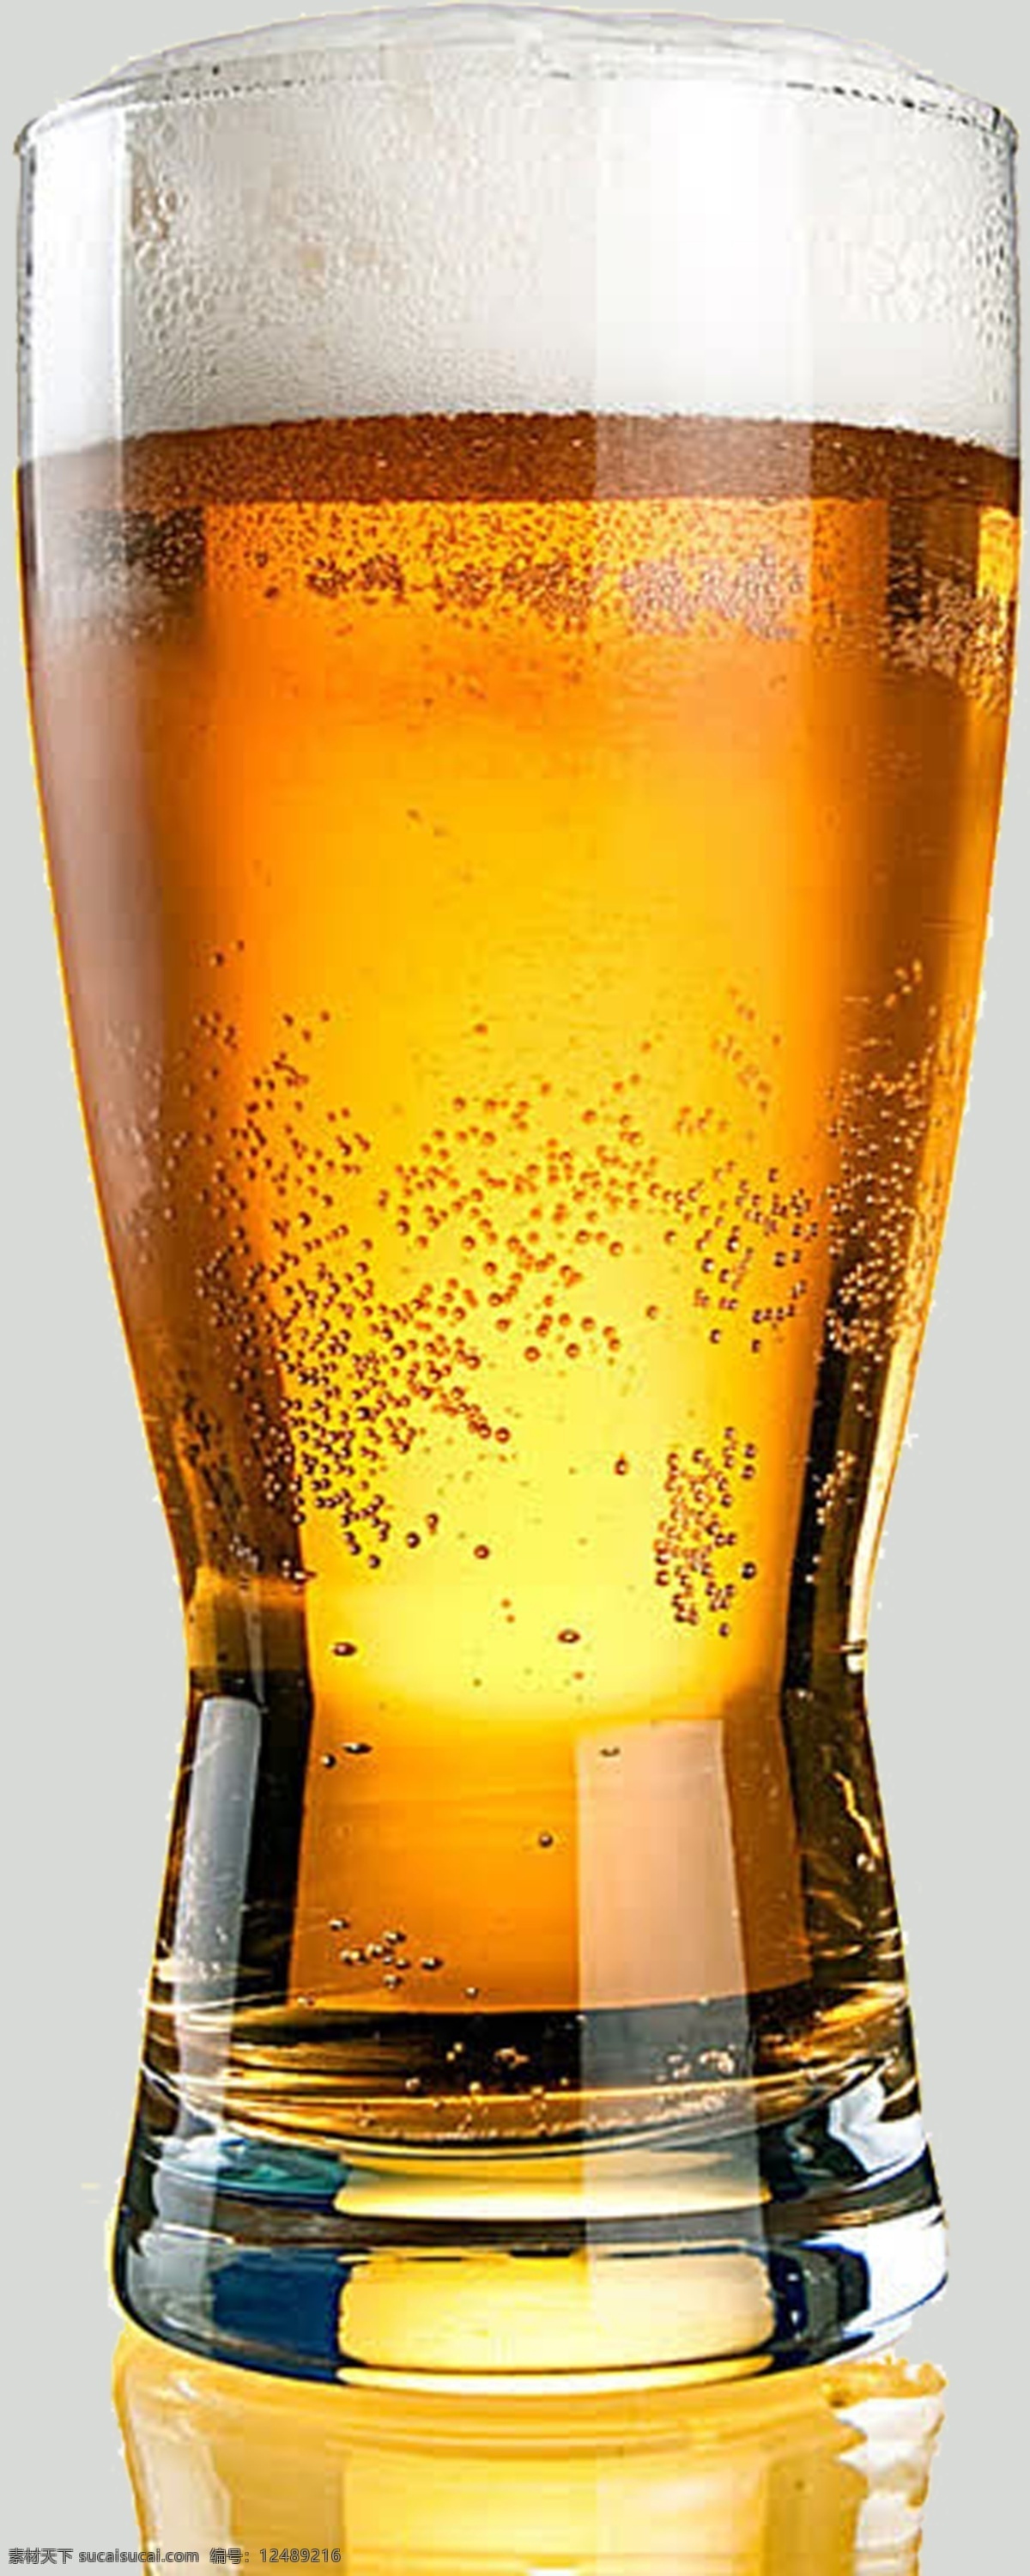 啤酒素材 啤酒免扣 免扣啤酒 大杯啤酒 扎啤 啤酒图片 免扣啤酒素材 啤酒免扣素材 平面设计 生活百科 餐饮美食